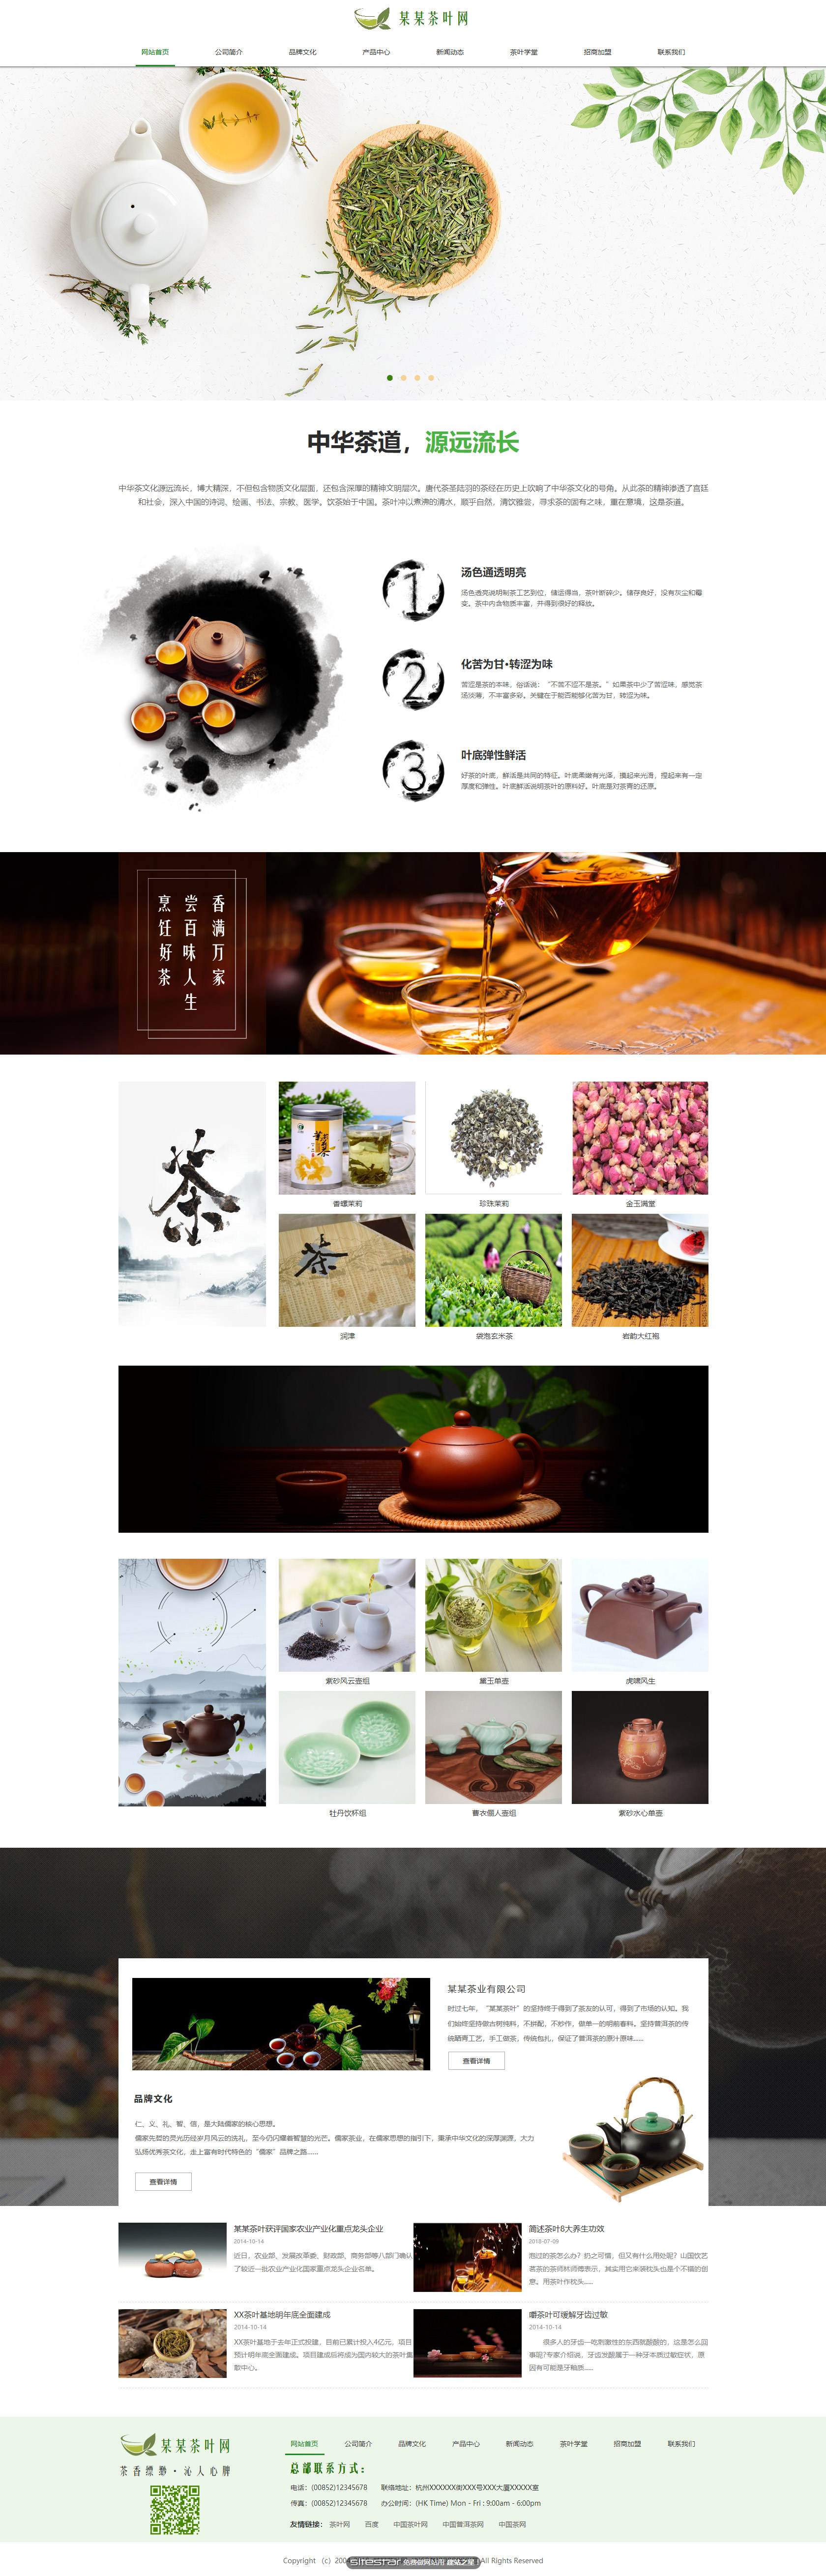 茶叶网站模板-tea-330